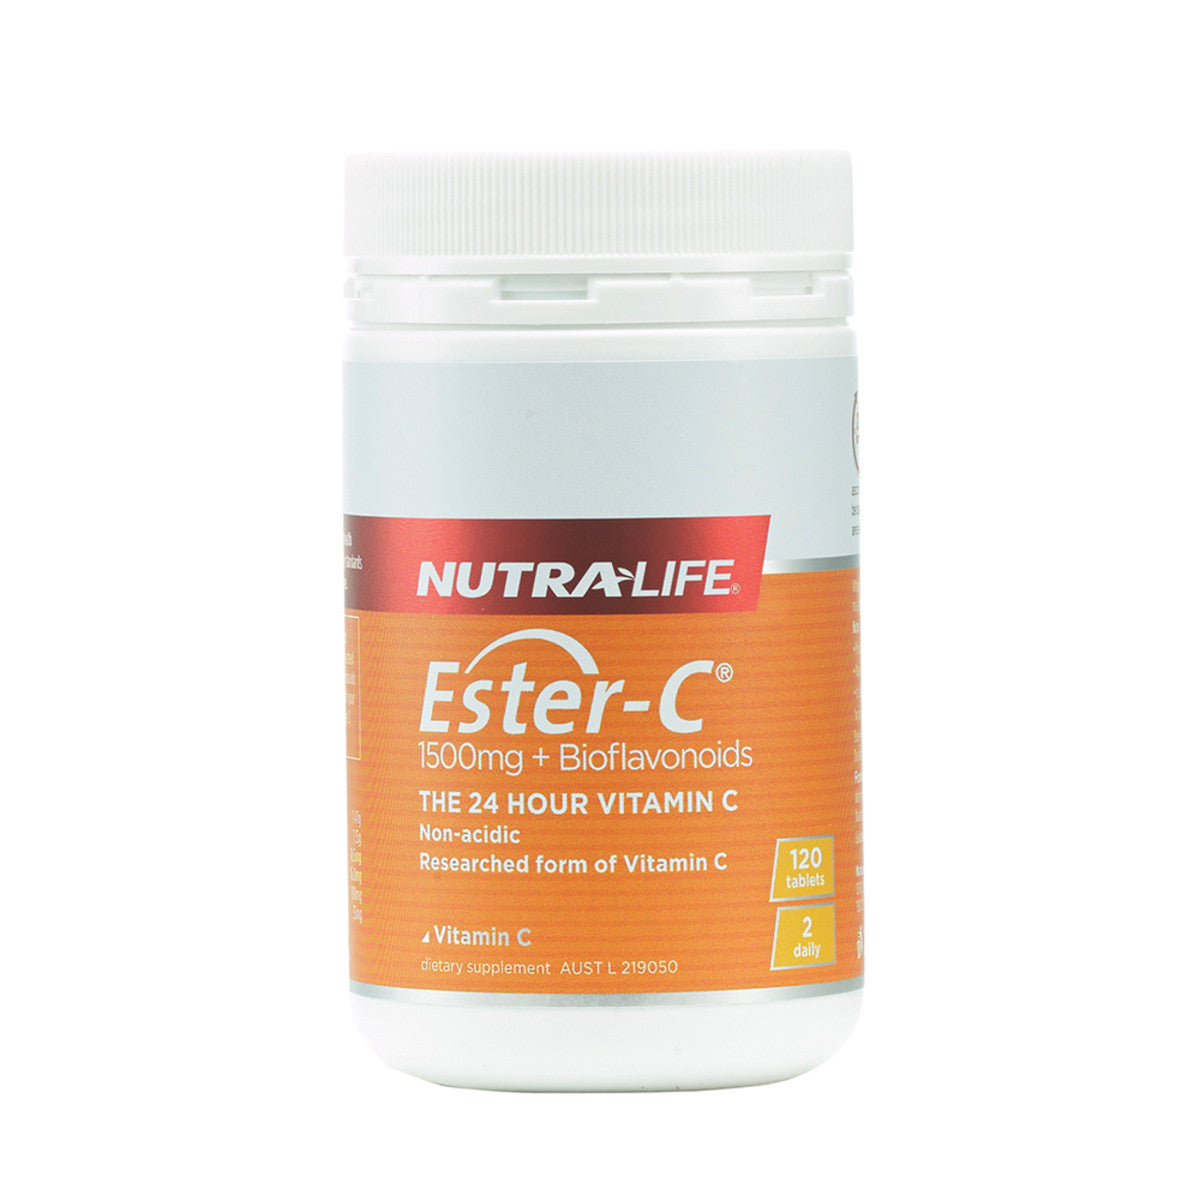 NutraLife - Ester-C 1500mg+